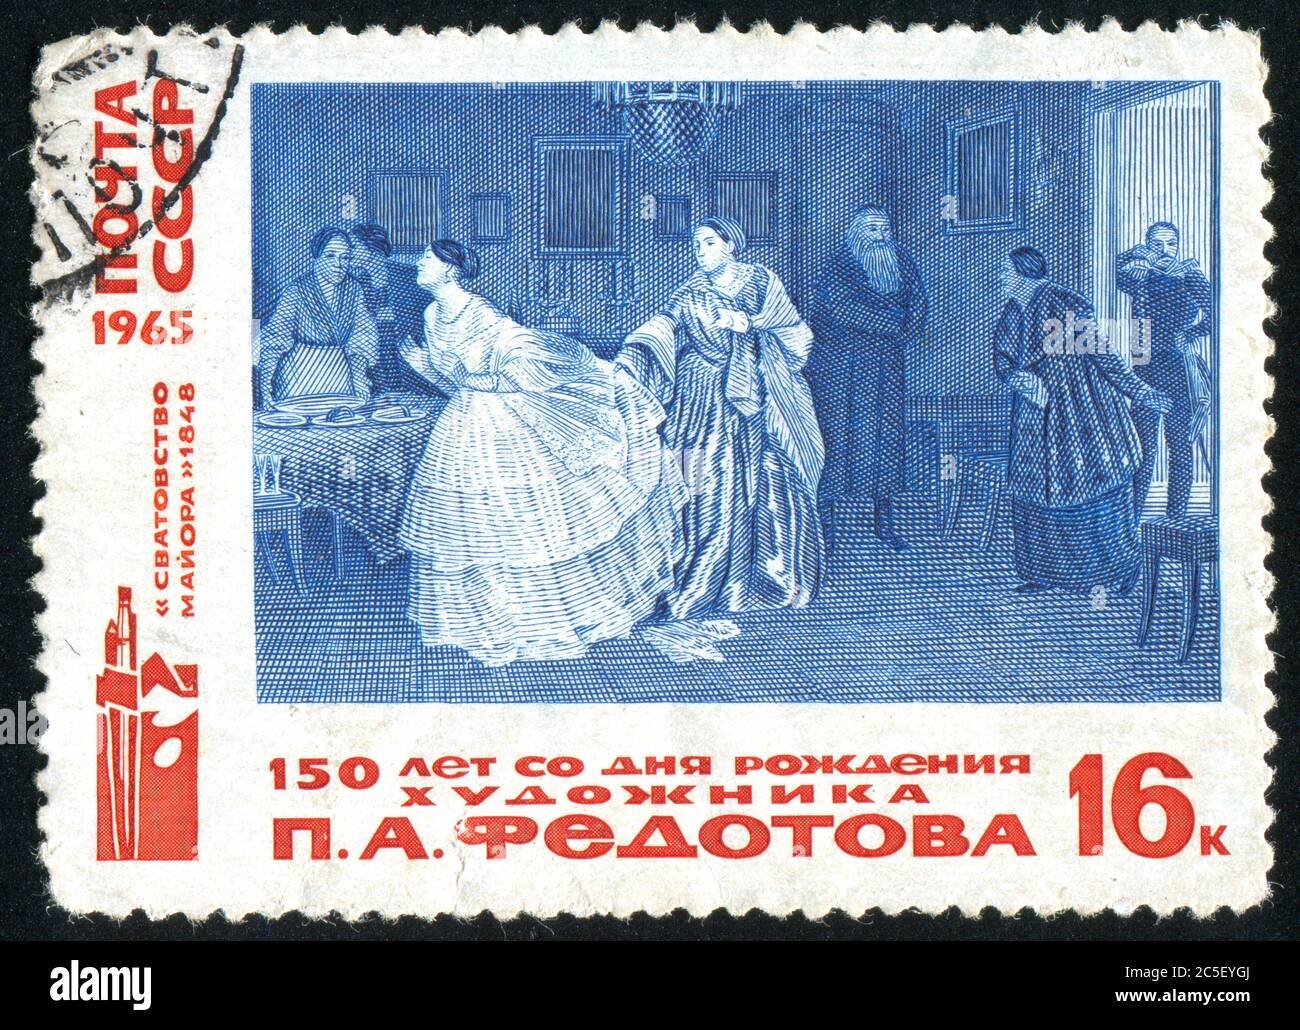 RUSSIE - VERS 1965 : timbre imprimé par la Russie, montre la cour de Major » par Pavel Andreievitch Fedotov, vers 1965. Banque D'Images